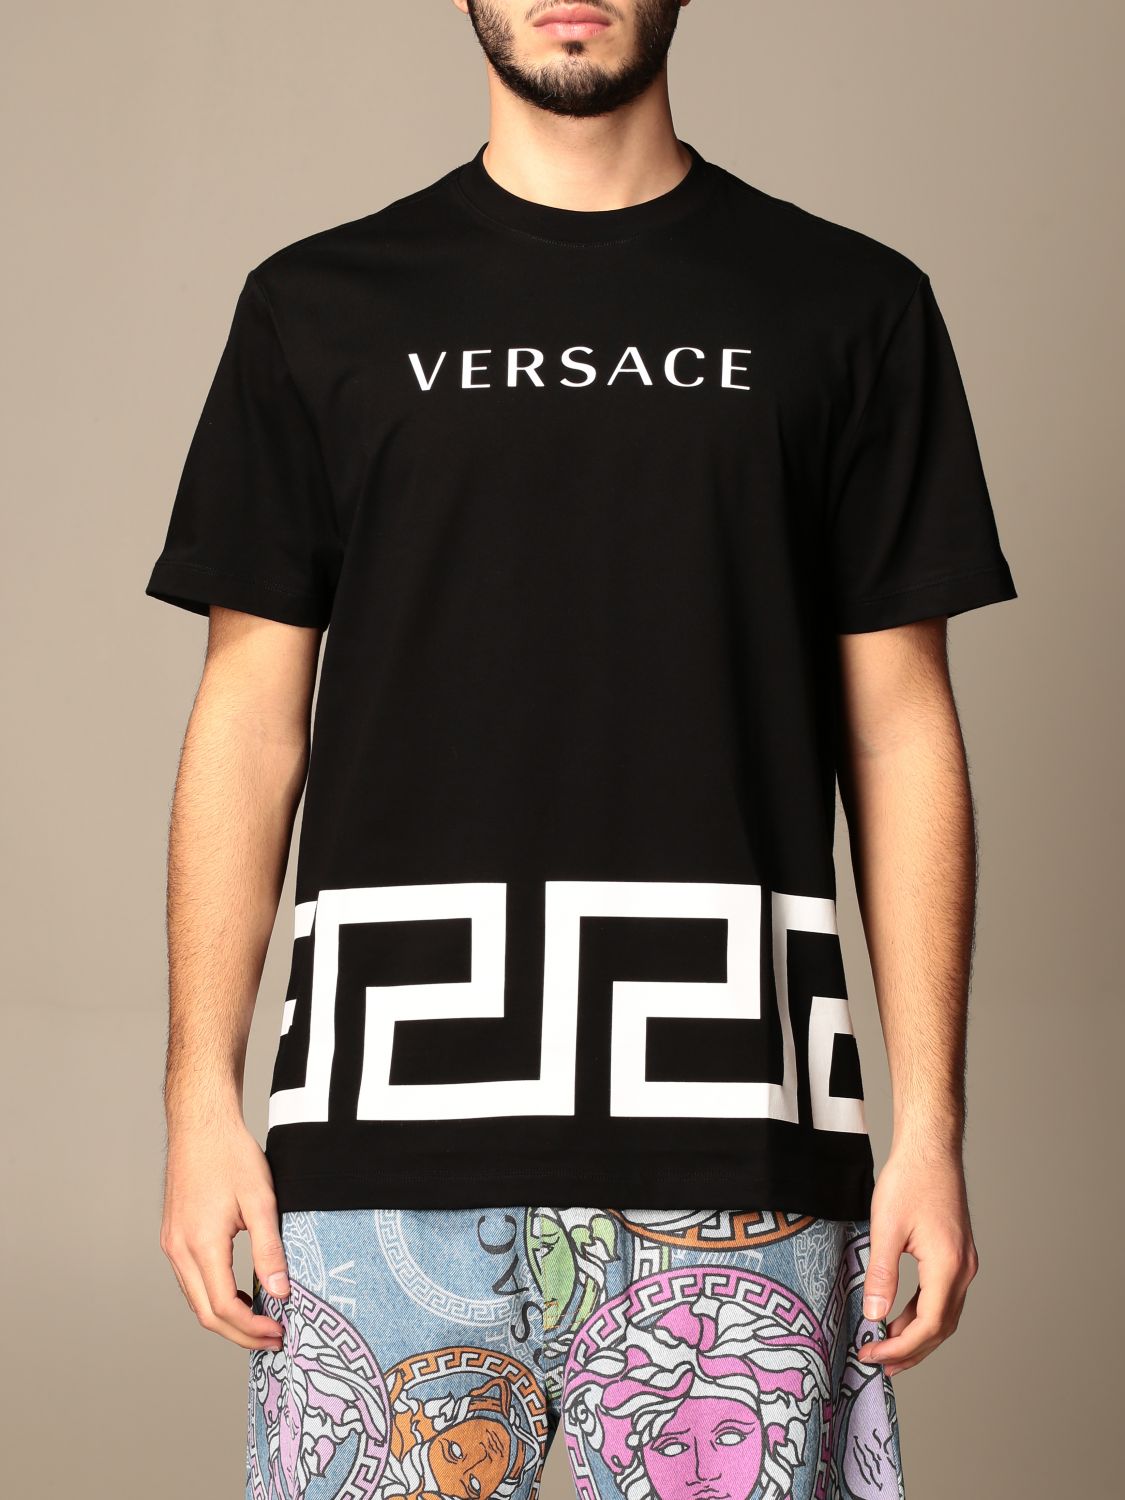 Buy > t shirt homme versace > in stock